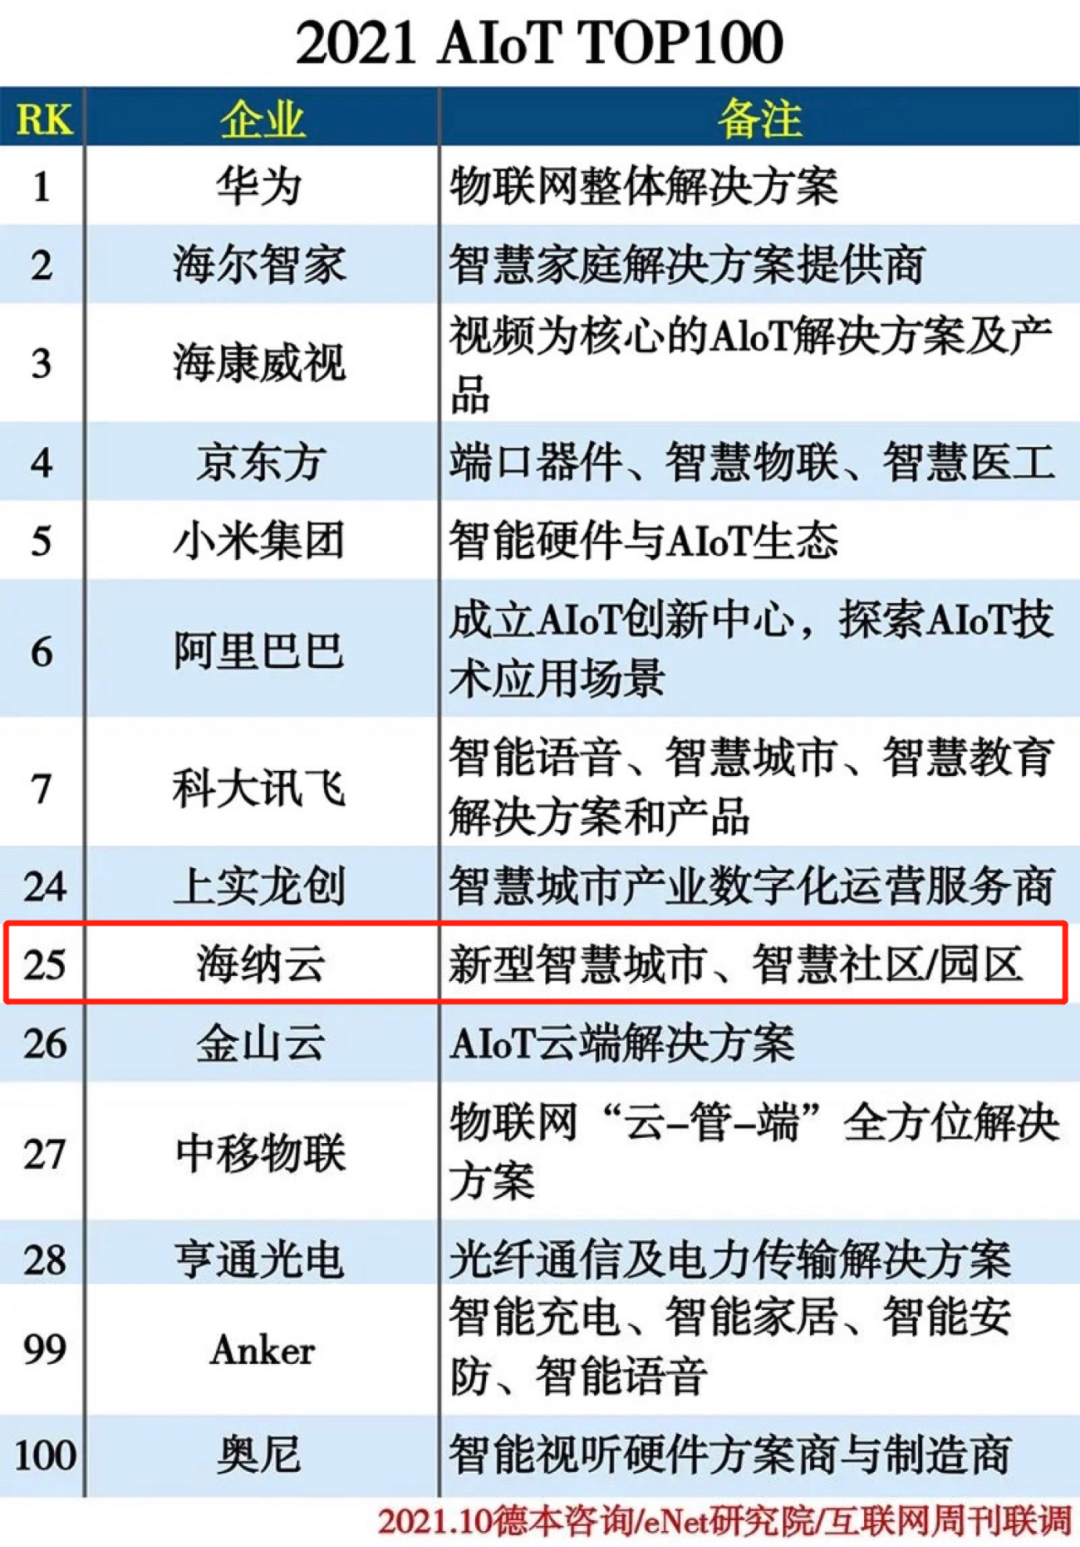 海纳云成功上榜AIoT 百强，位居TOP25